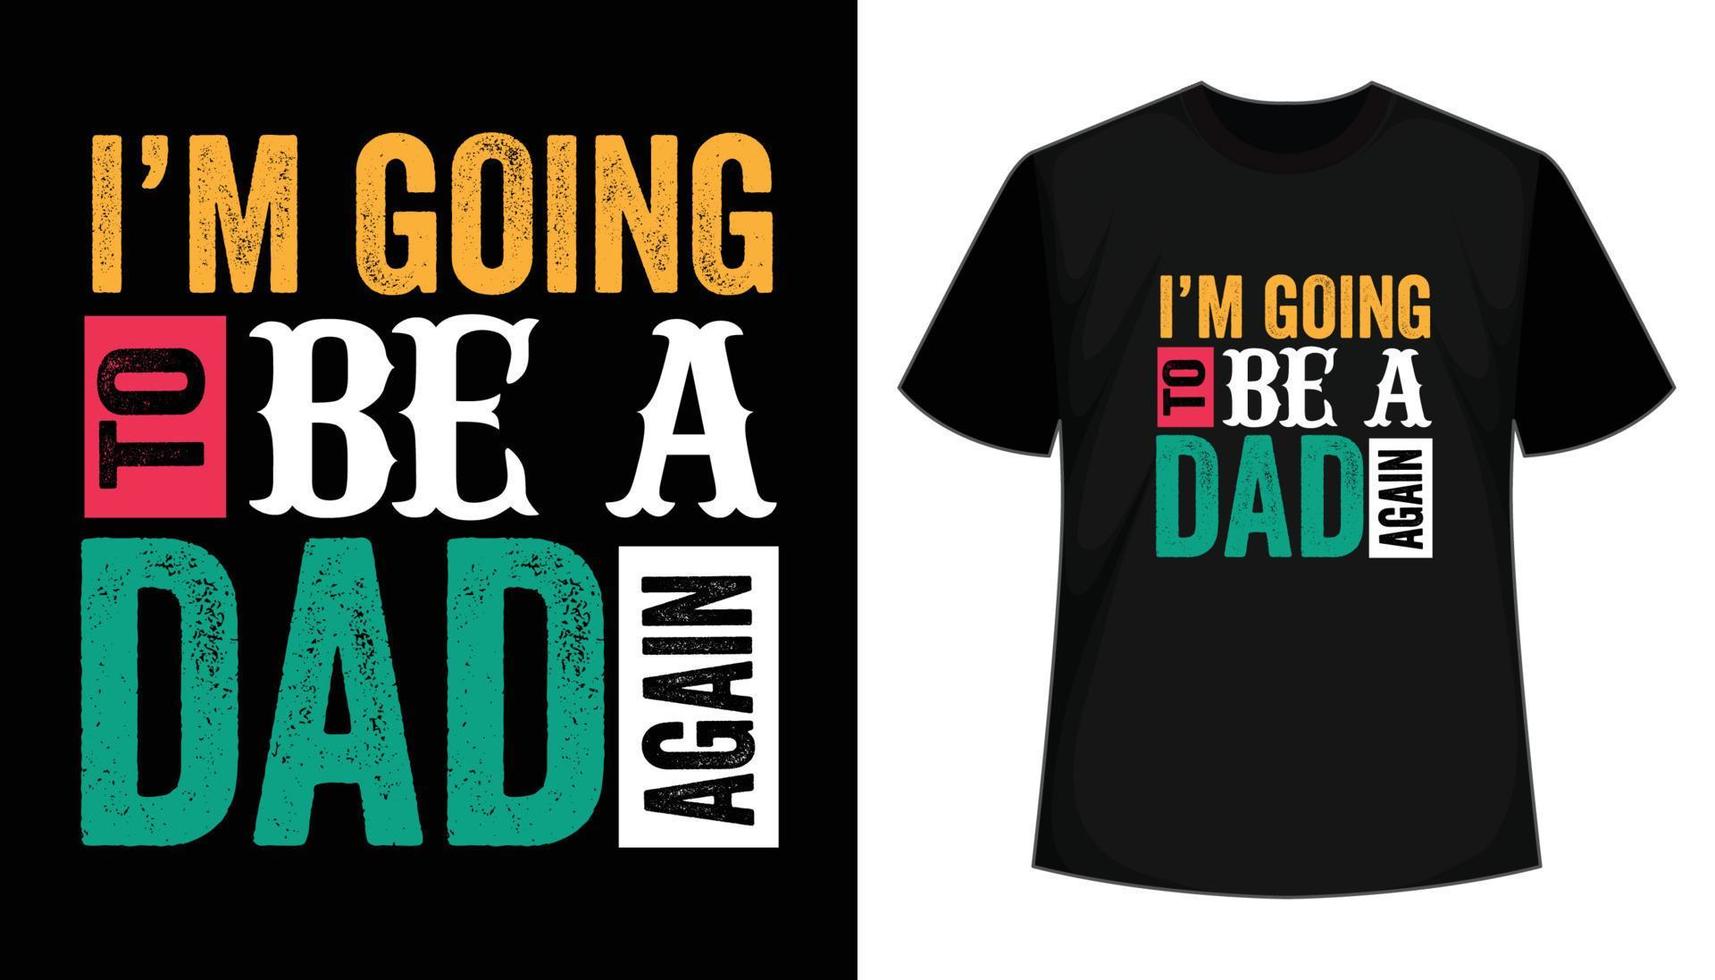 Ich werde wieder Vater - Papa-T-Shirt-Design. Vatertags-T-Shirt-Design, druckfertiges T-Shirt, typografisches T-Shirt-Design vektor